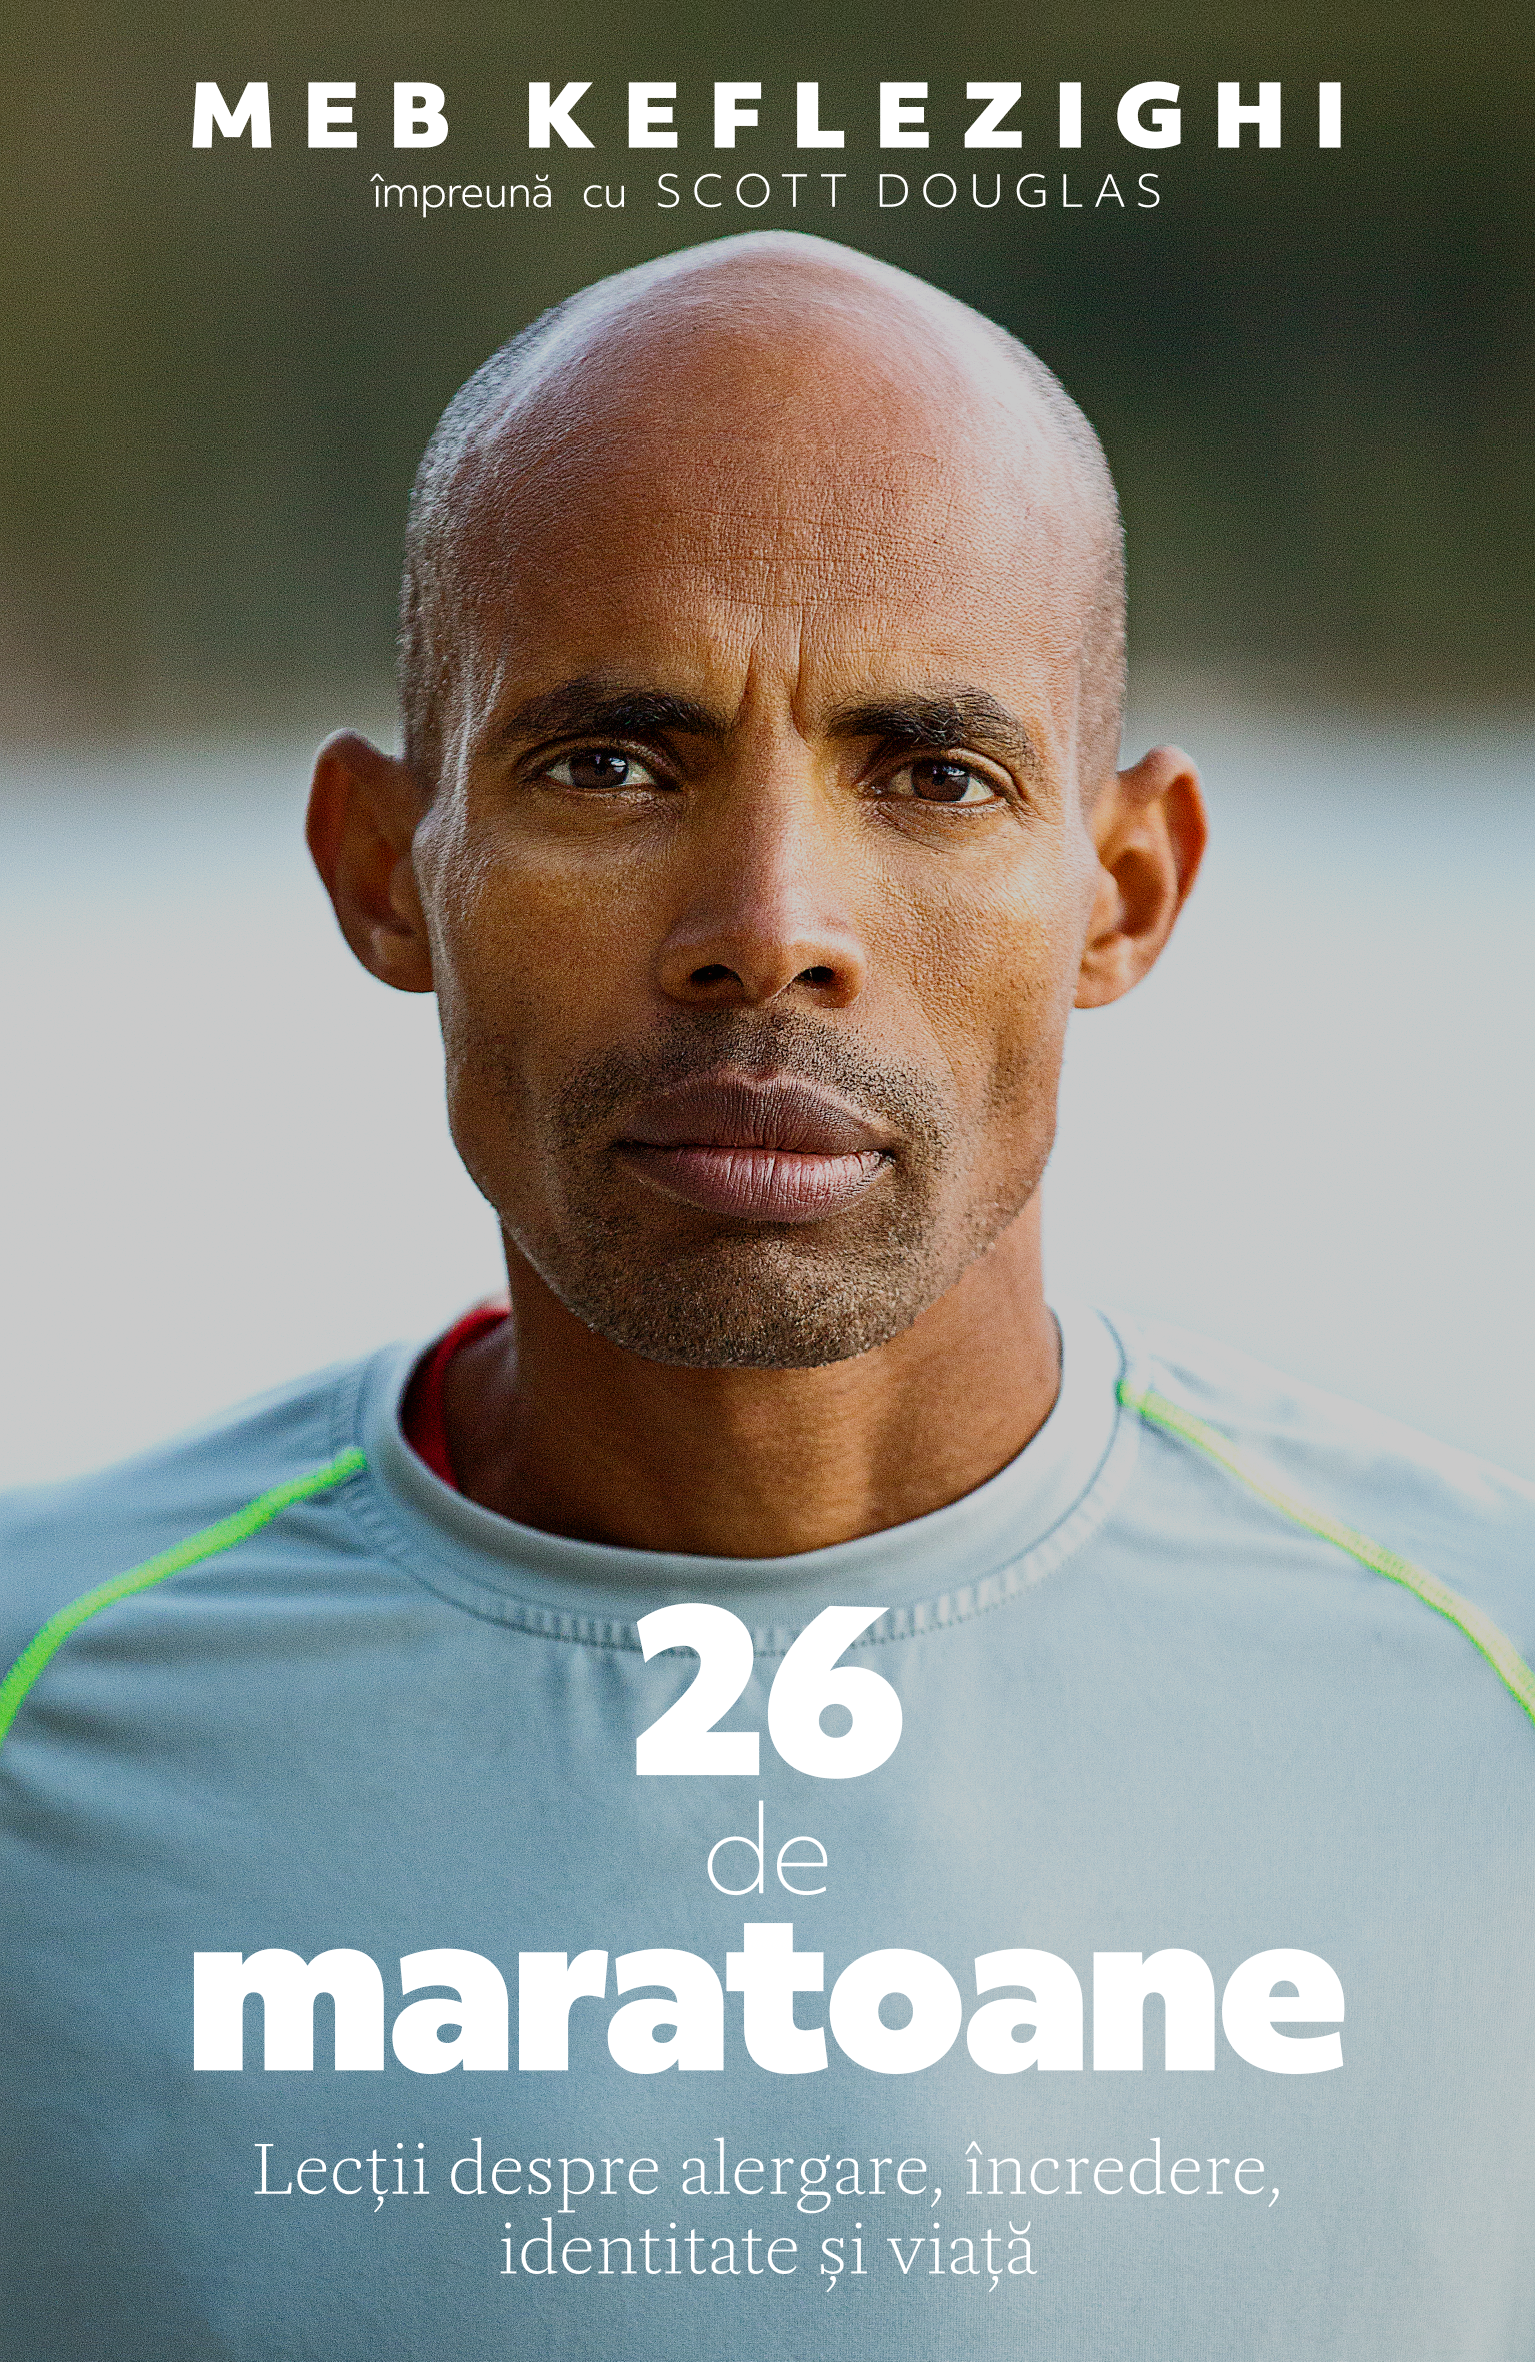 26 de maratoane. Lectii despre alergare, incredere, identitate si viata